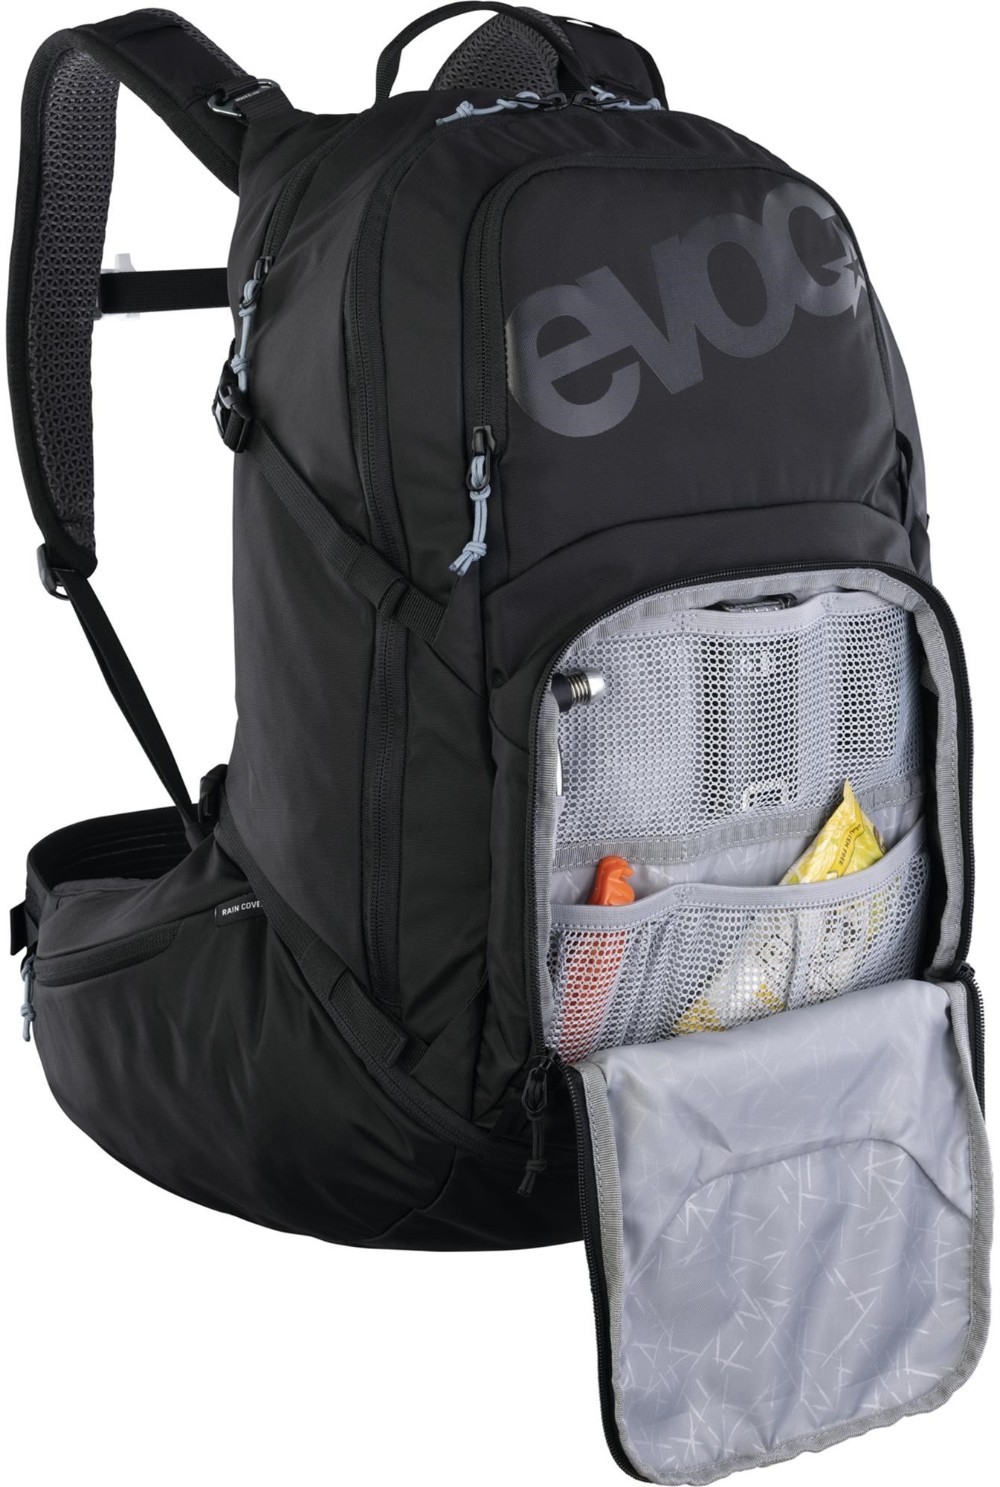 Explorer Pro 26 Backpack image 2